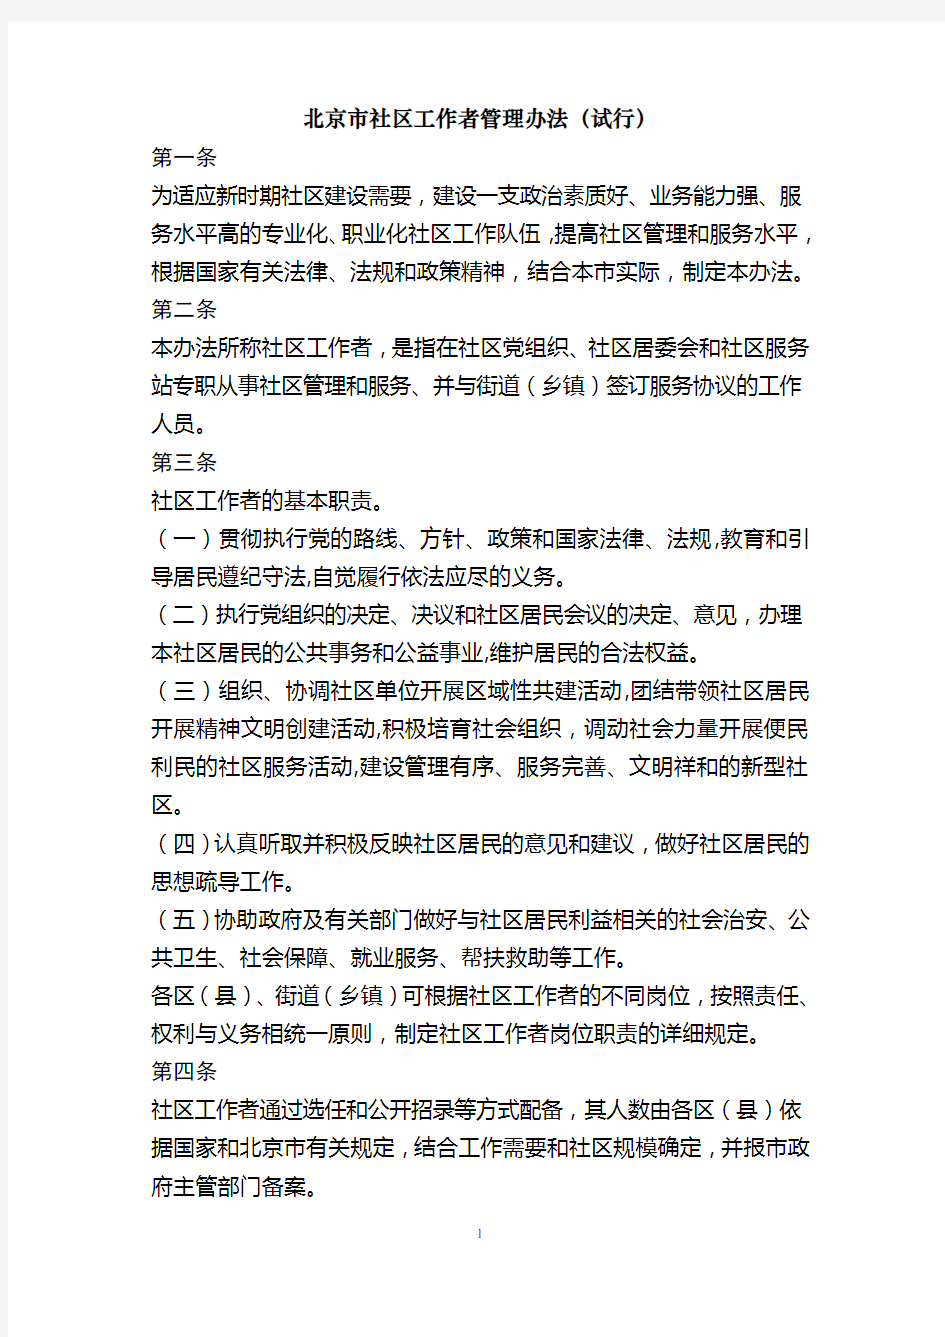 《北京市社区工作者管理办法(试行)》